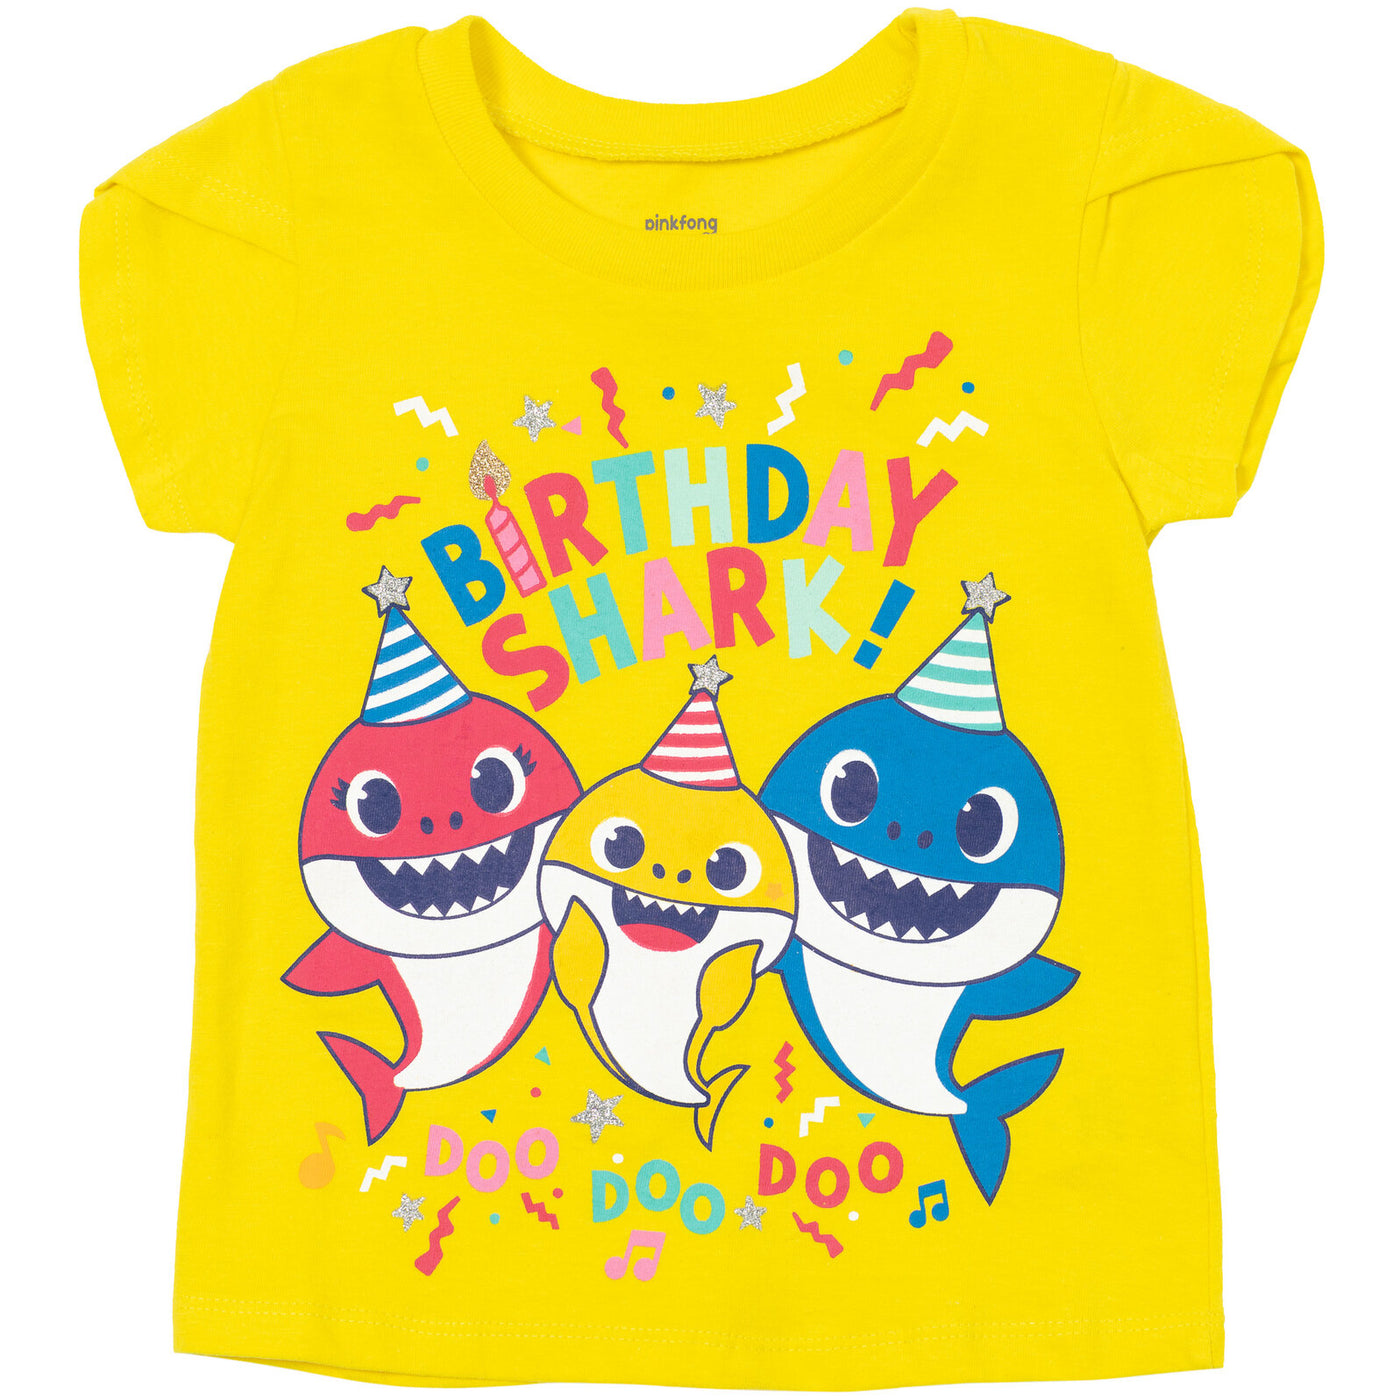 Pinkfong Baby Shark T-Shirt